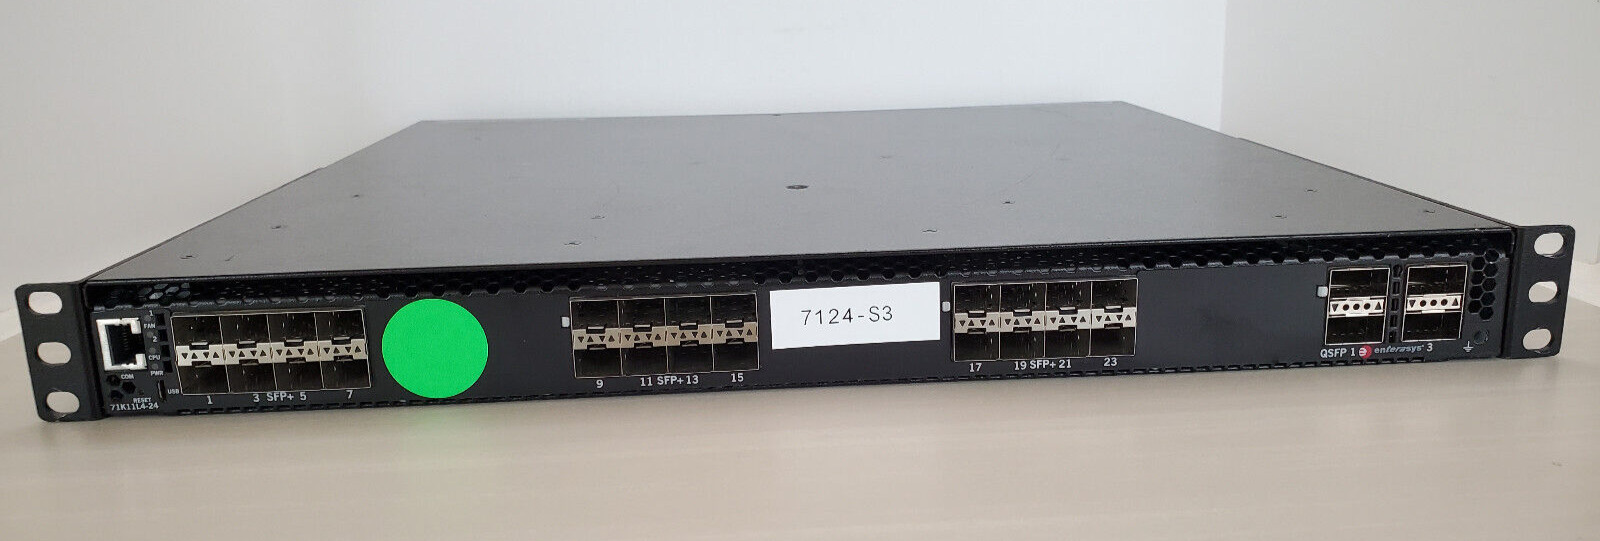 Enterasys 7124 71K11L4-24 24xSFP+ 4xQSFP 7100 Series Network Switch 2xPSU